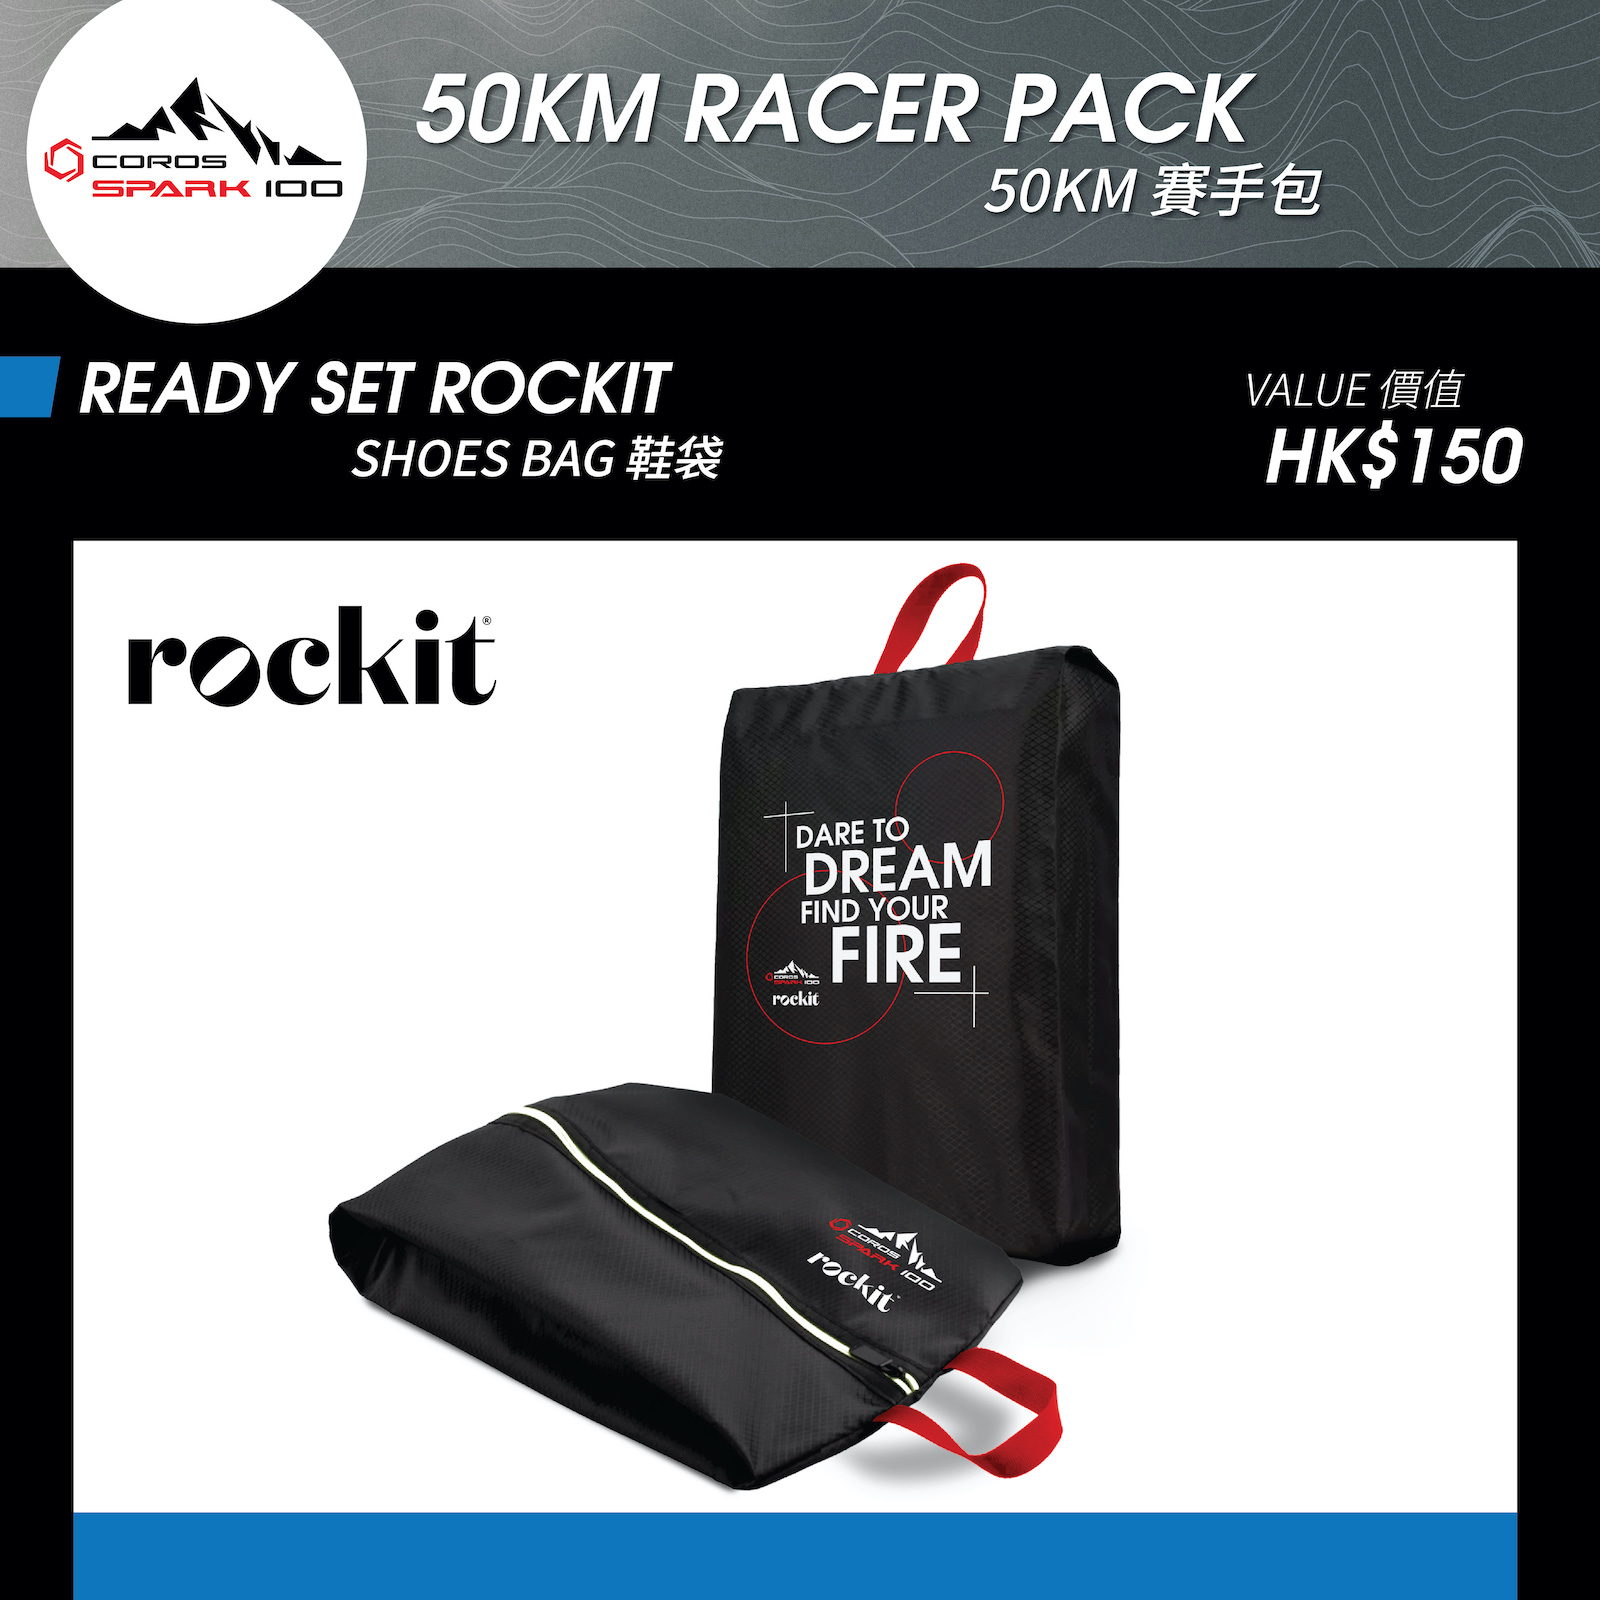 READY SET ROCKIT - 鞋袋 (價值 HK$150)